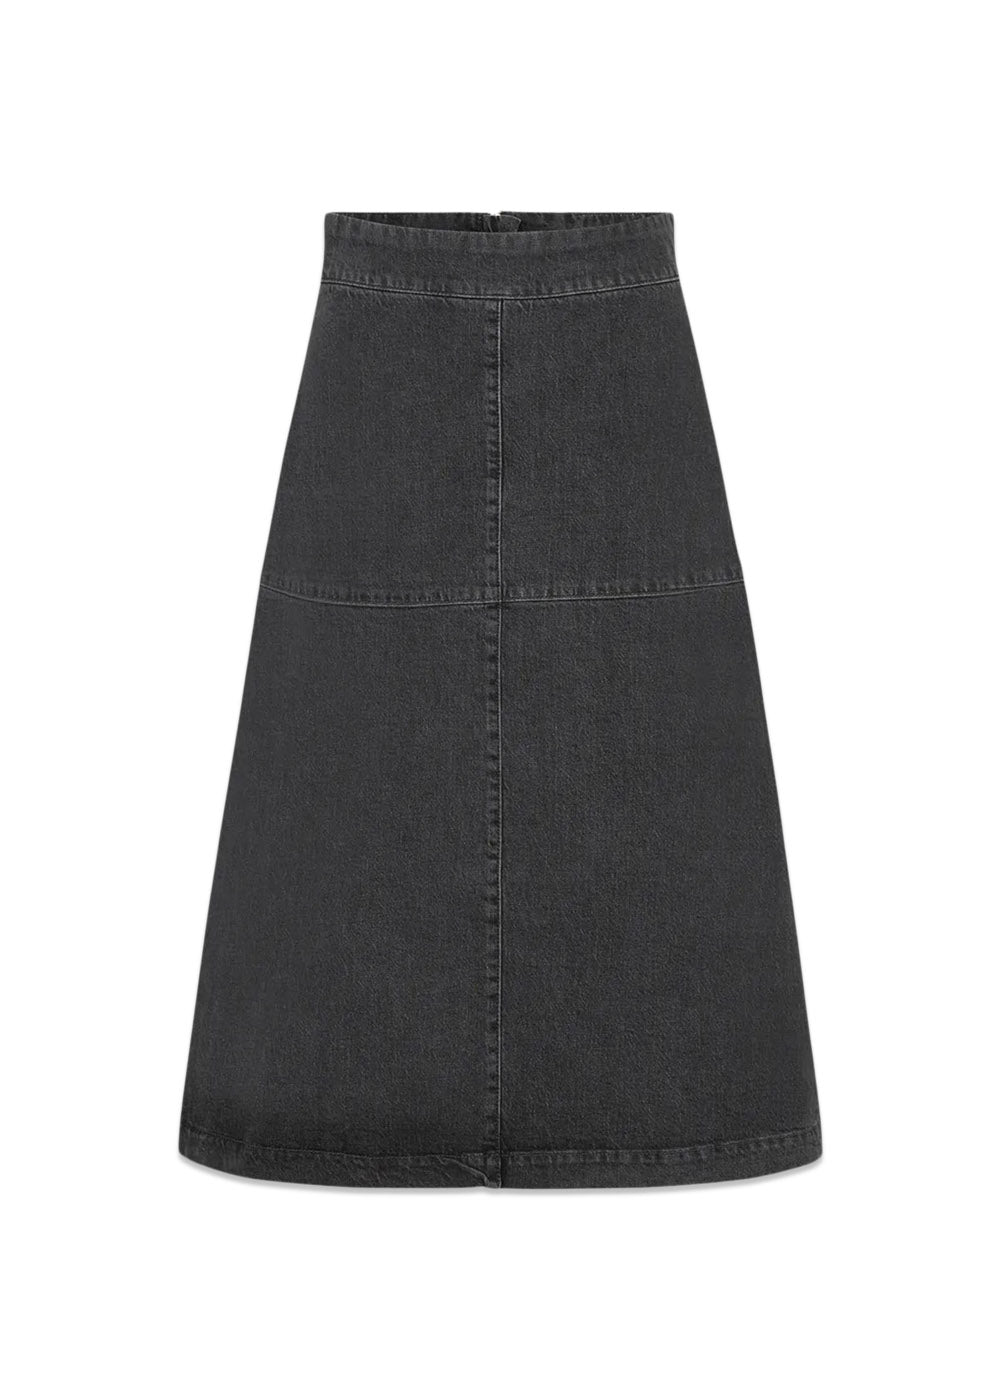 Mads Nørgaards Black Denim Lunar Skirt - Black. Køb skirts her.